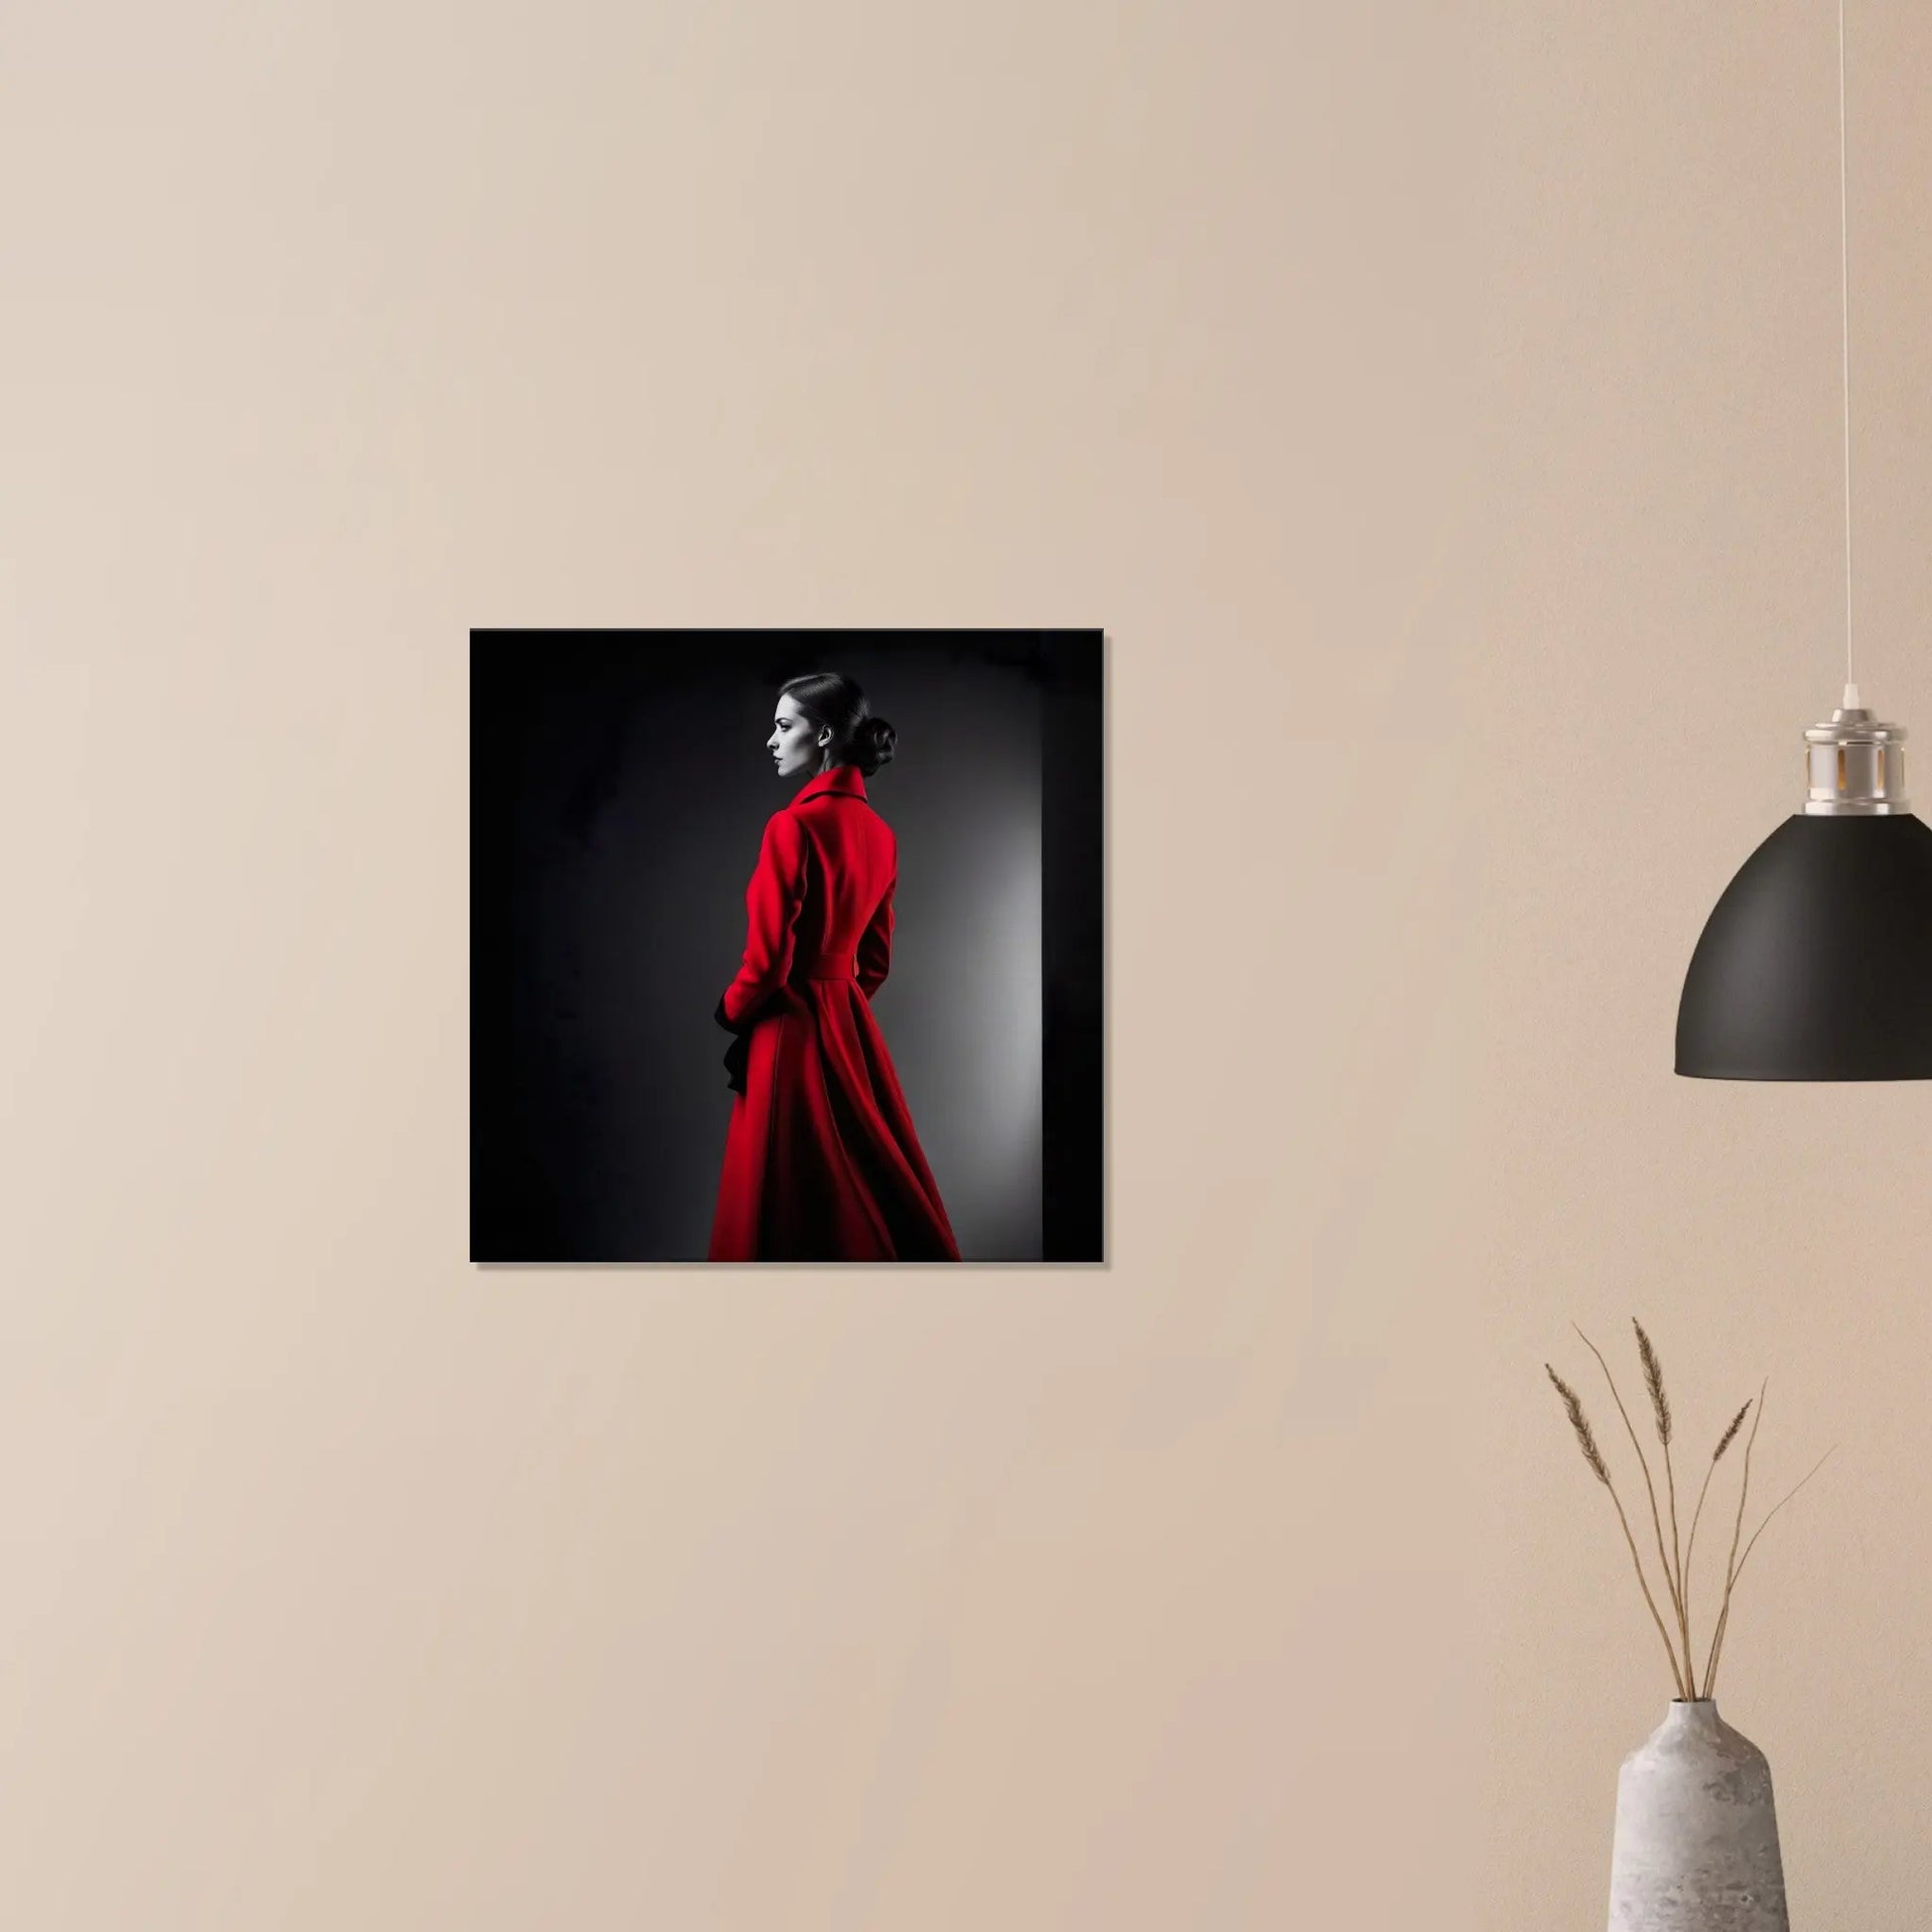 Leinwandbild - Frau im roten Mantel - Schwarz-Weiß Stil, KI-Kunst - RolConArt, Schwarz-Weiß mit Akzentfarben, 